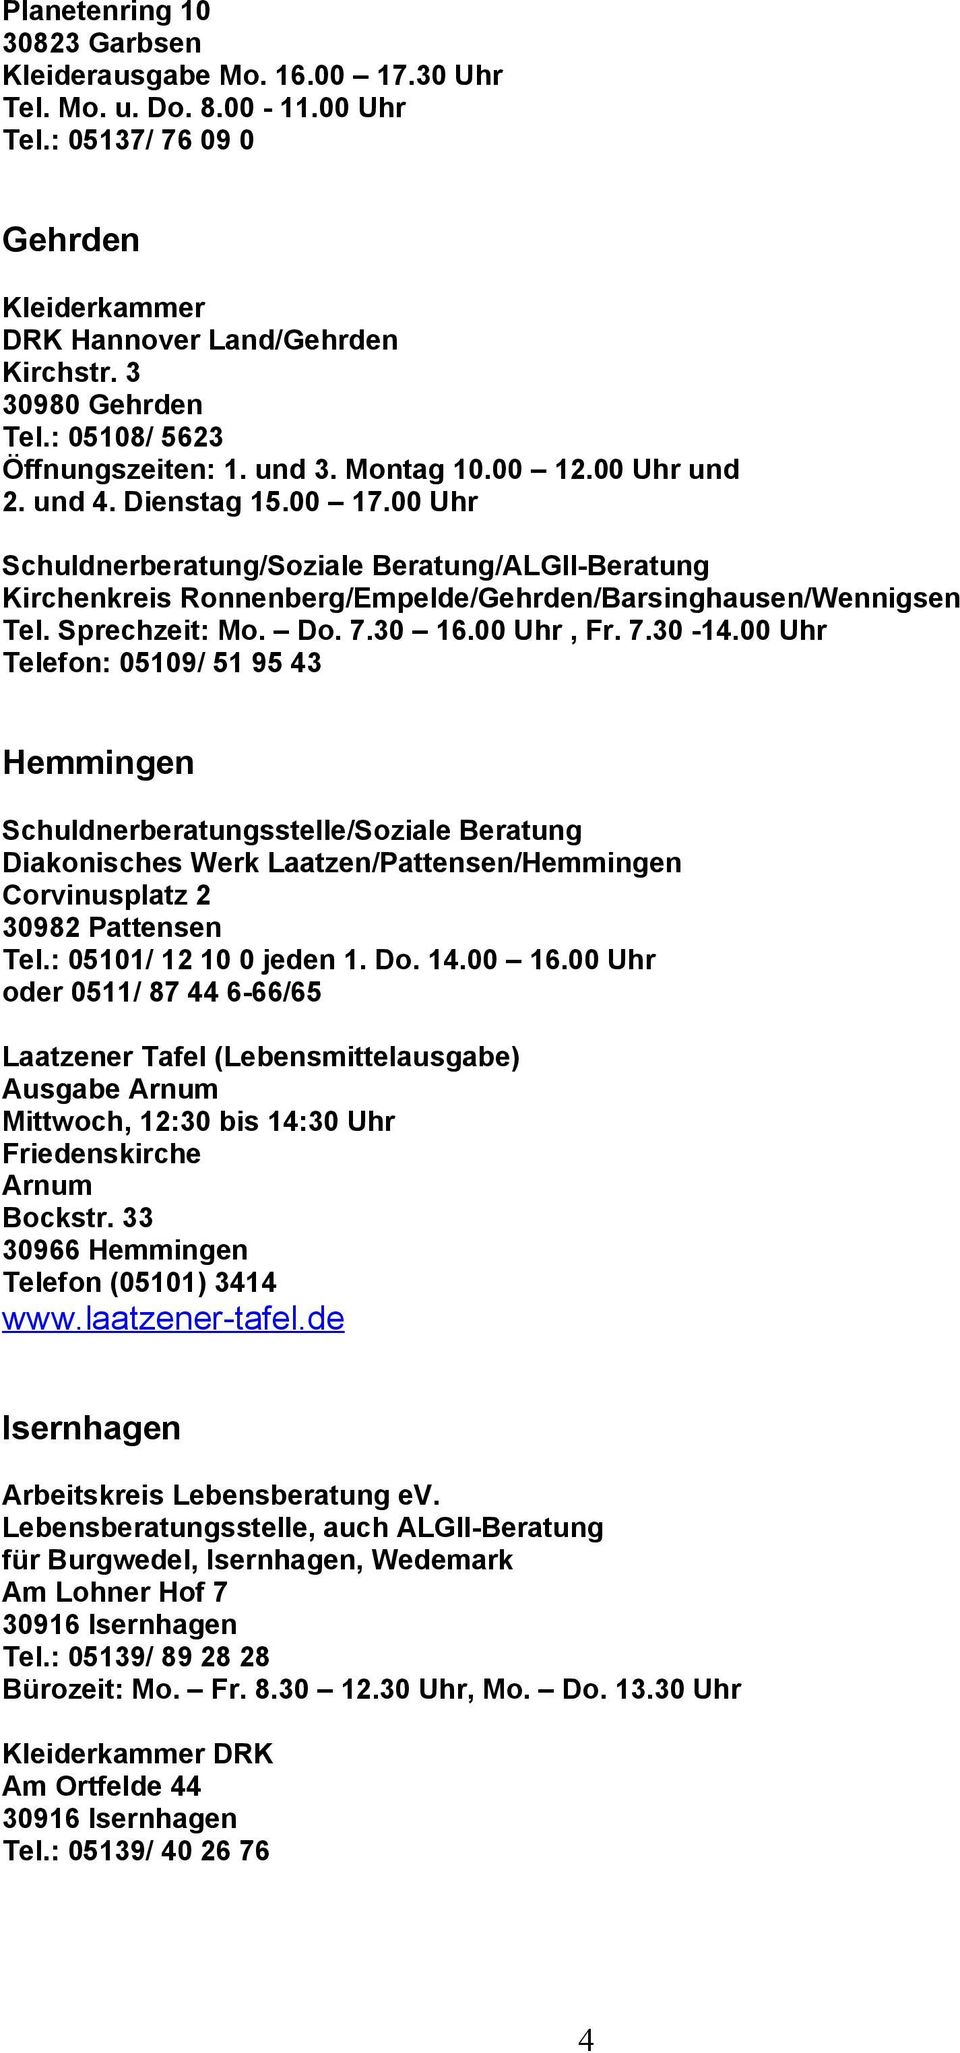 00 Uhr /Soziale Beratung/ALGII-Beratung Kirchenkreis Ronnenberg/Empelde/Gehrden/Barsinghausen/Wennigsen Tel. Sprechzeit: Mo. Do. 7.30 16.00 Uhr, Fr. 7.30-14.